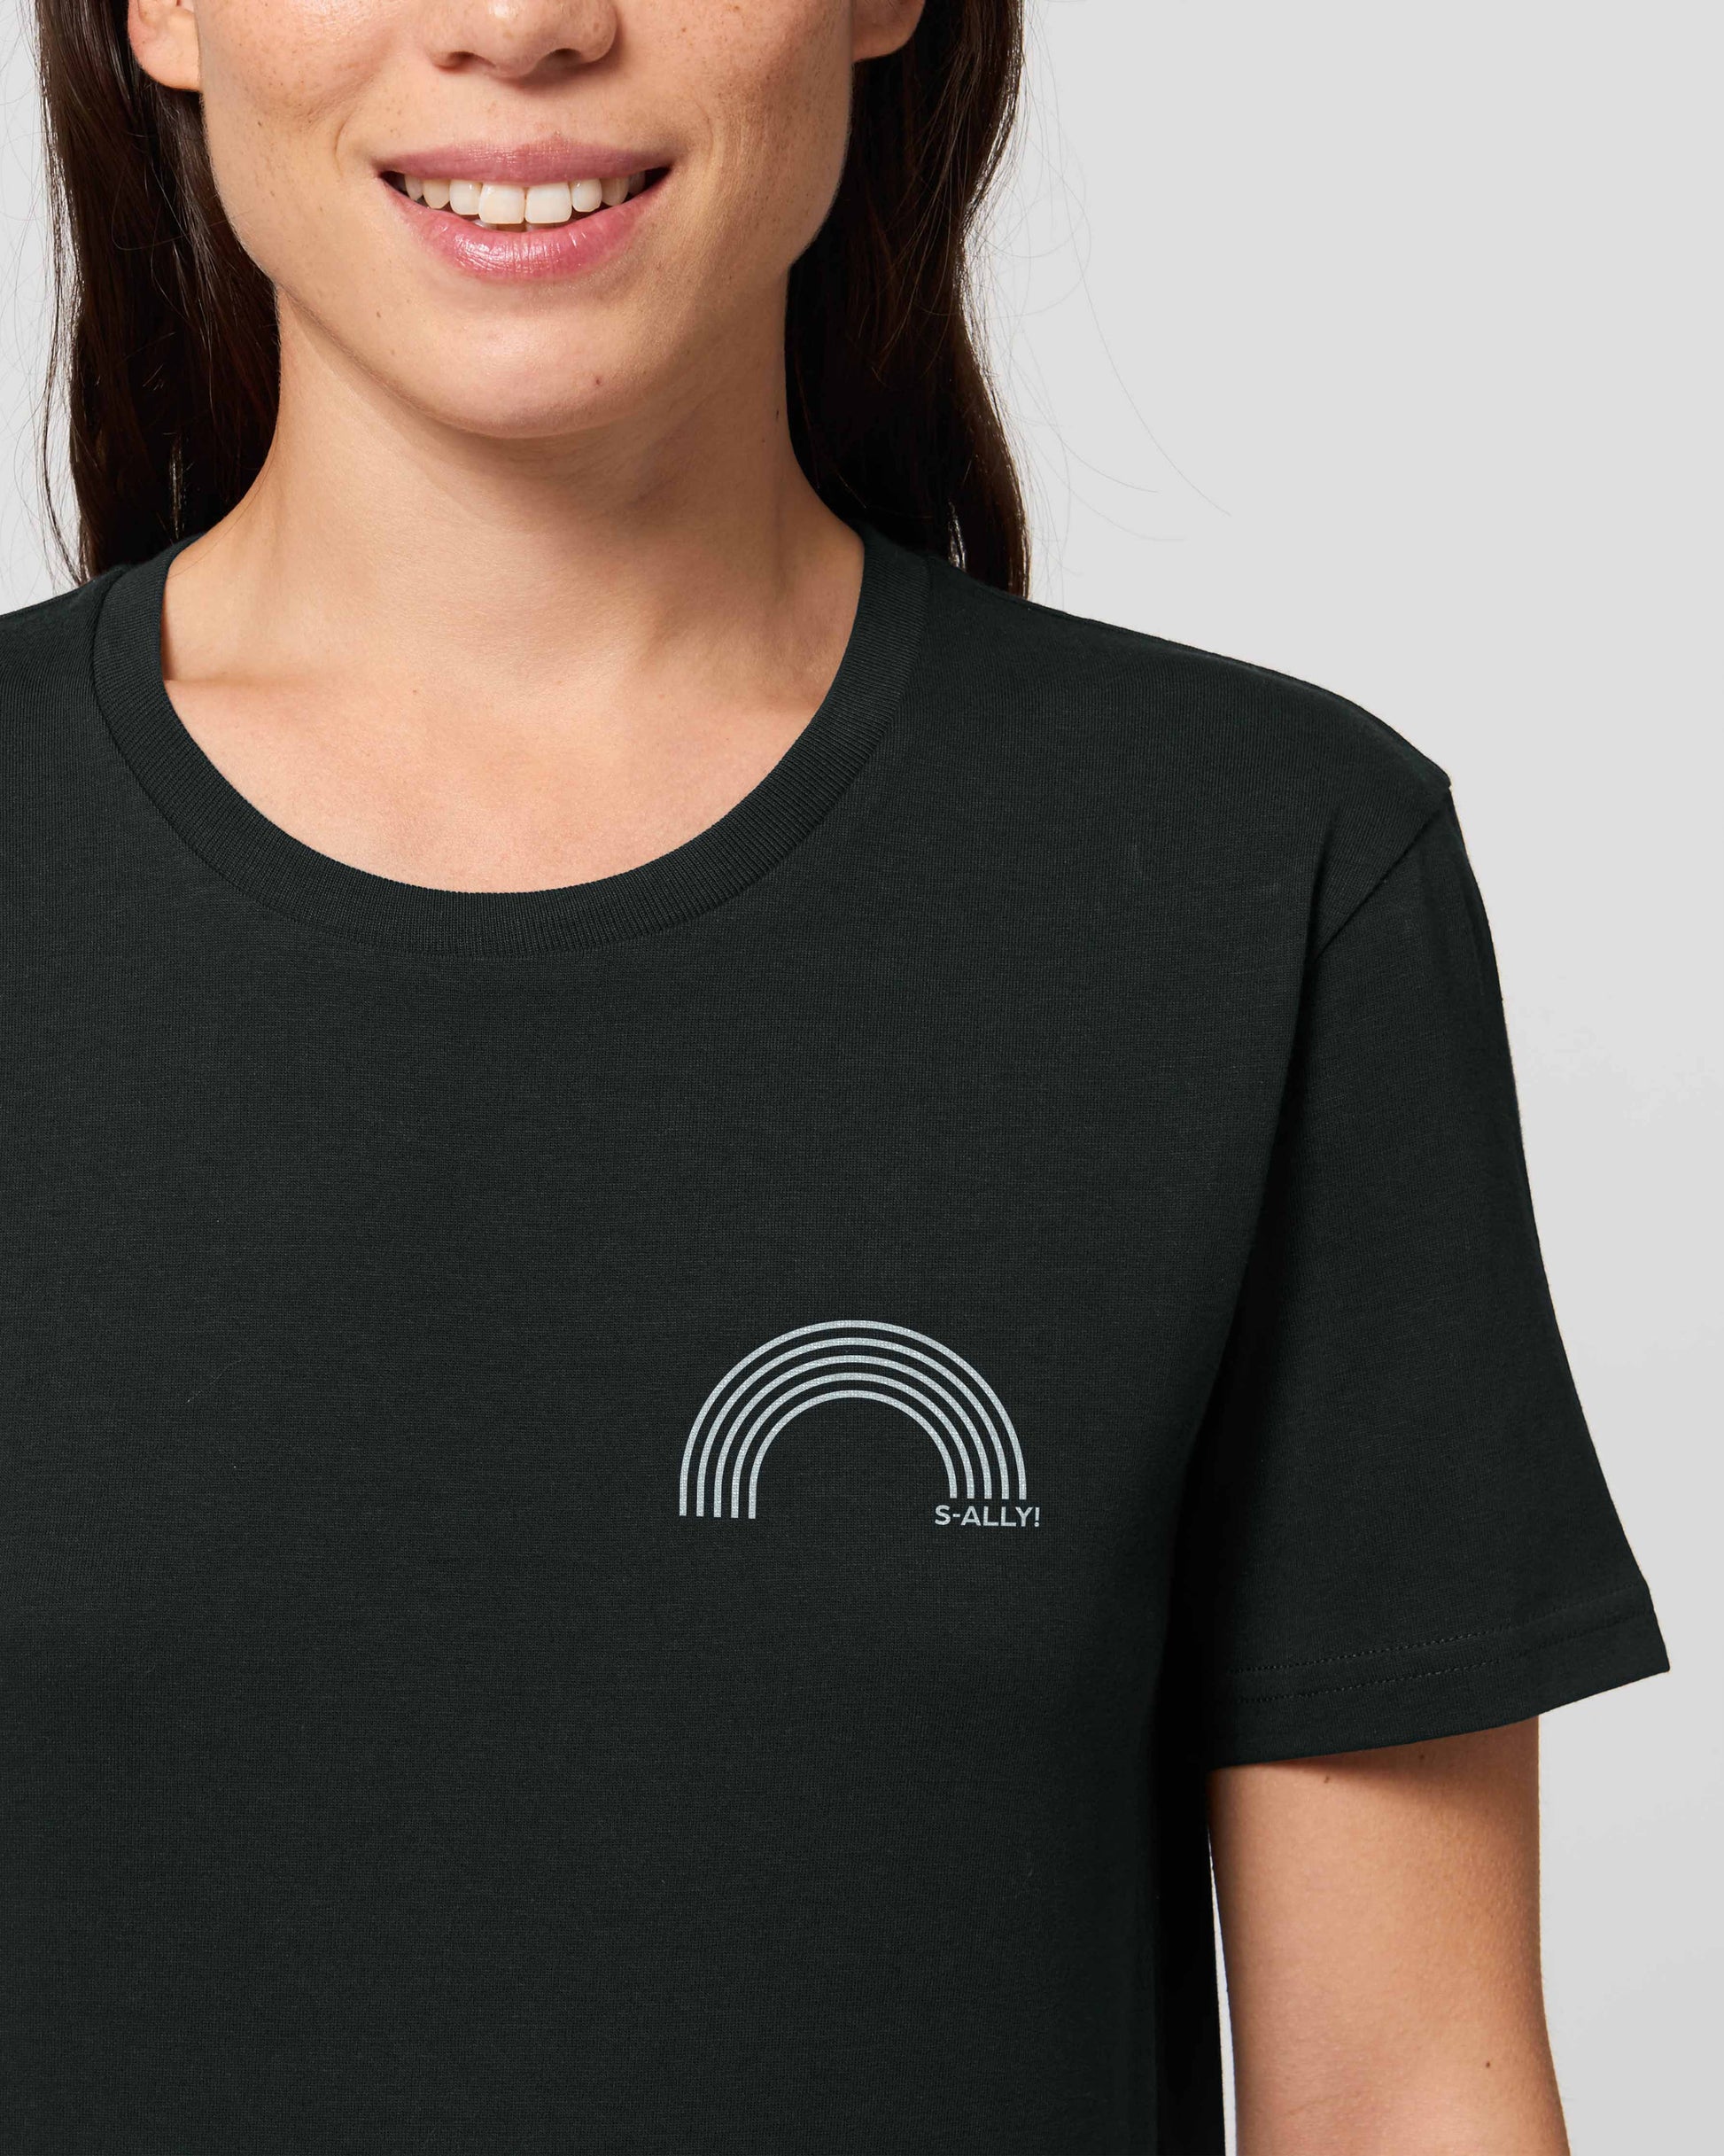 EINHORST® unisex Organic Shirt in Schwarz mit dem Motiv "s-ally Regenbogen" in der Kombination weißer Regenbogen mit weißer Schrift, Bild von weiblicher Person mit Shirt